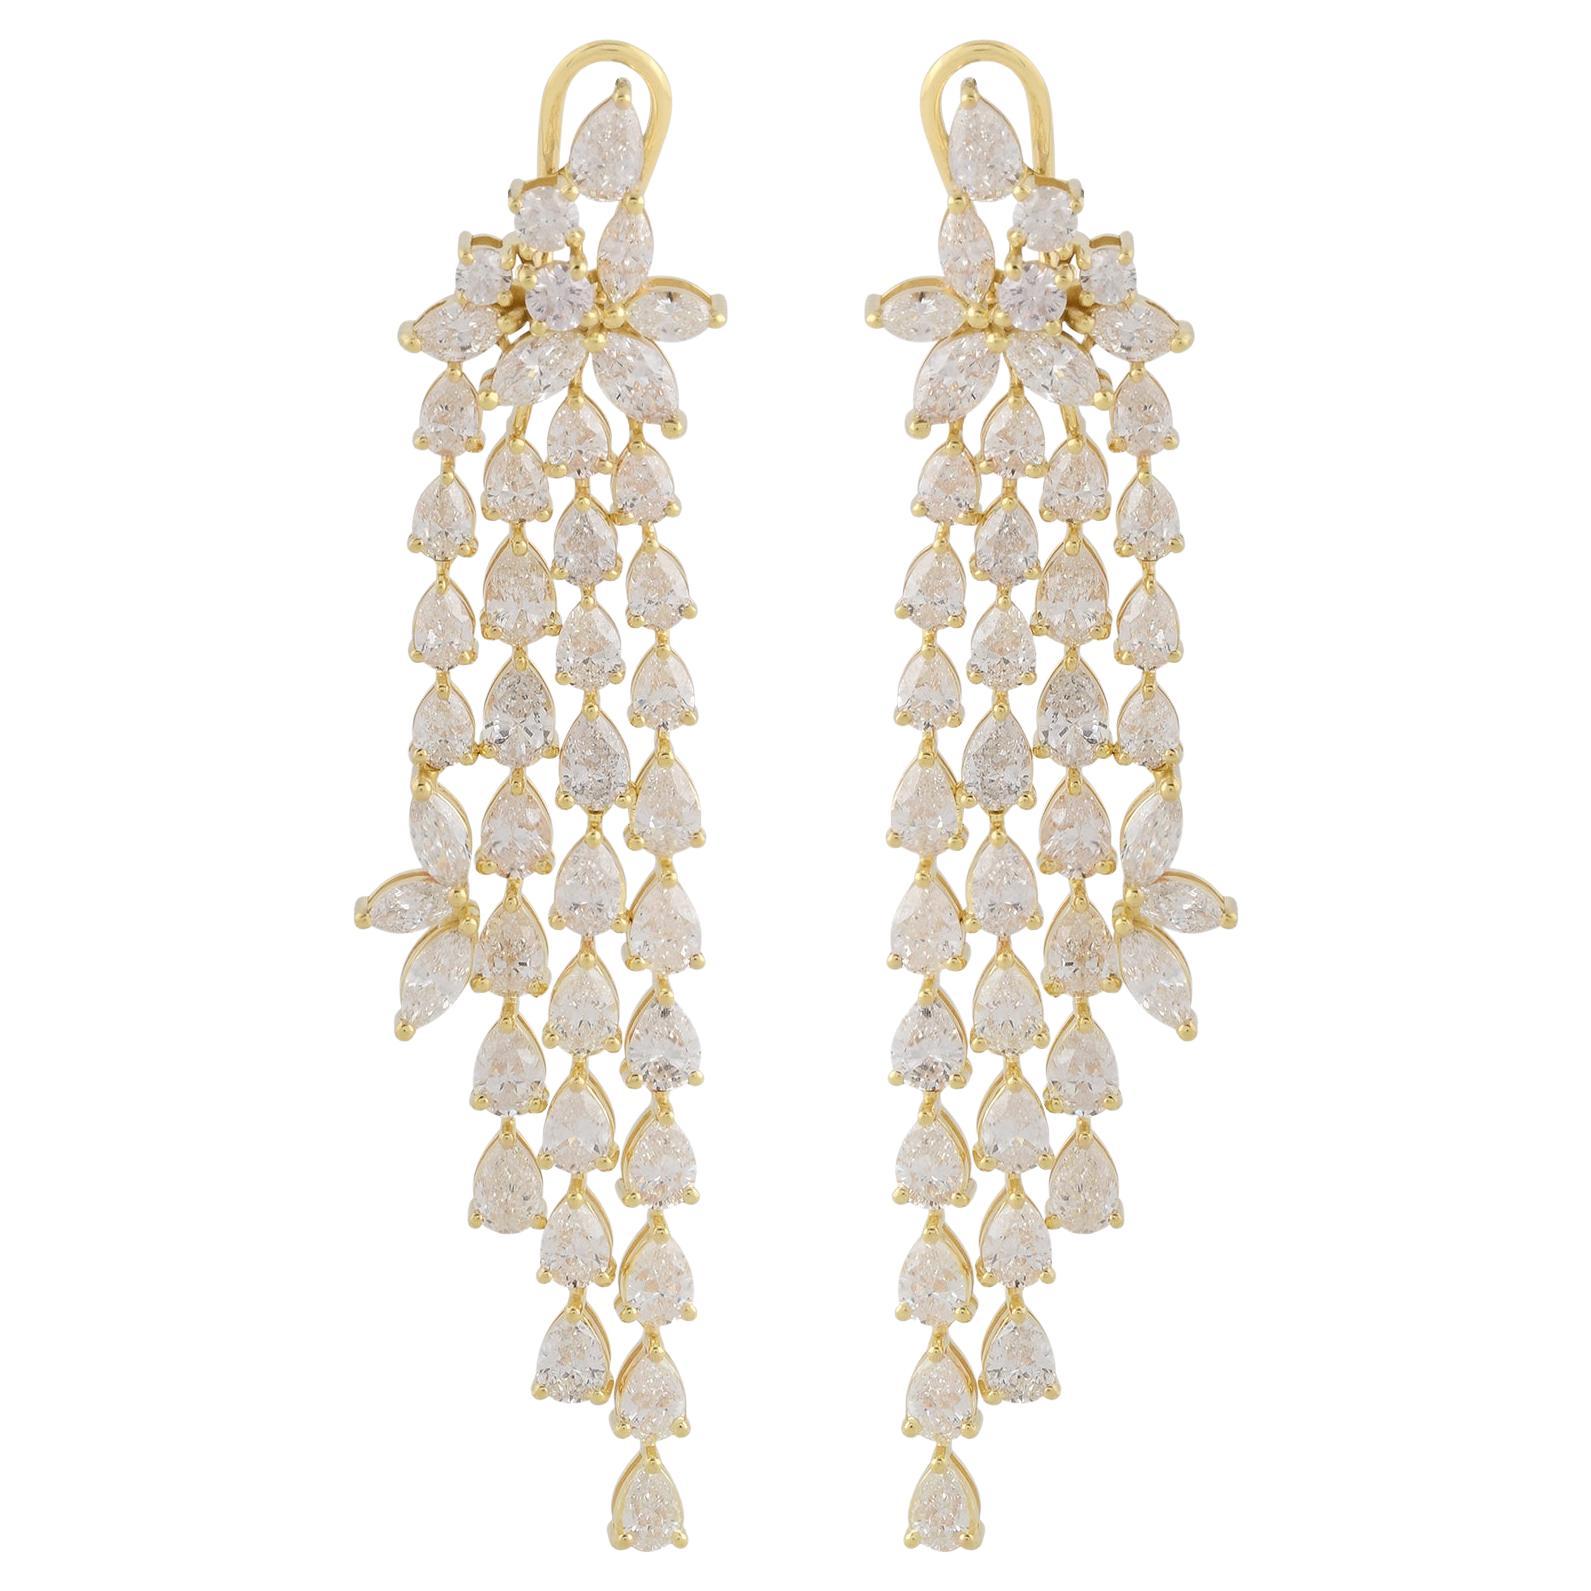 Pear Shape Diamond Chandelier Earrings 18 Karat Yellow Gold Handmade Jewelry For Sale